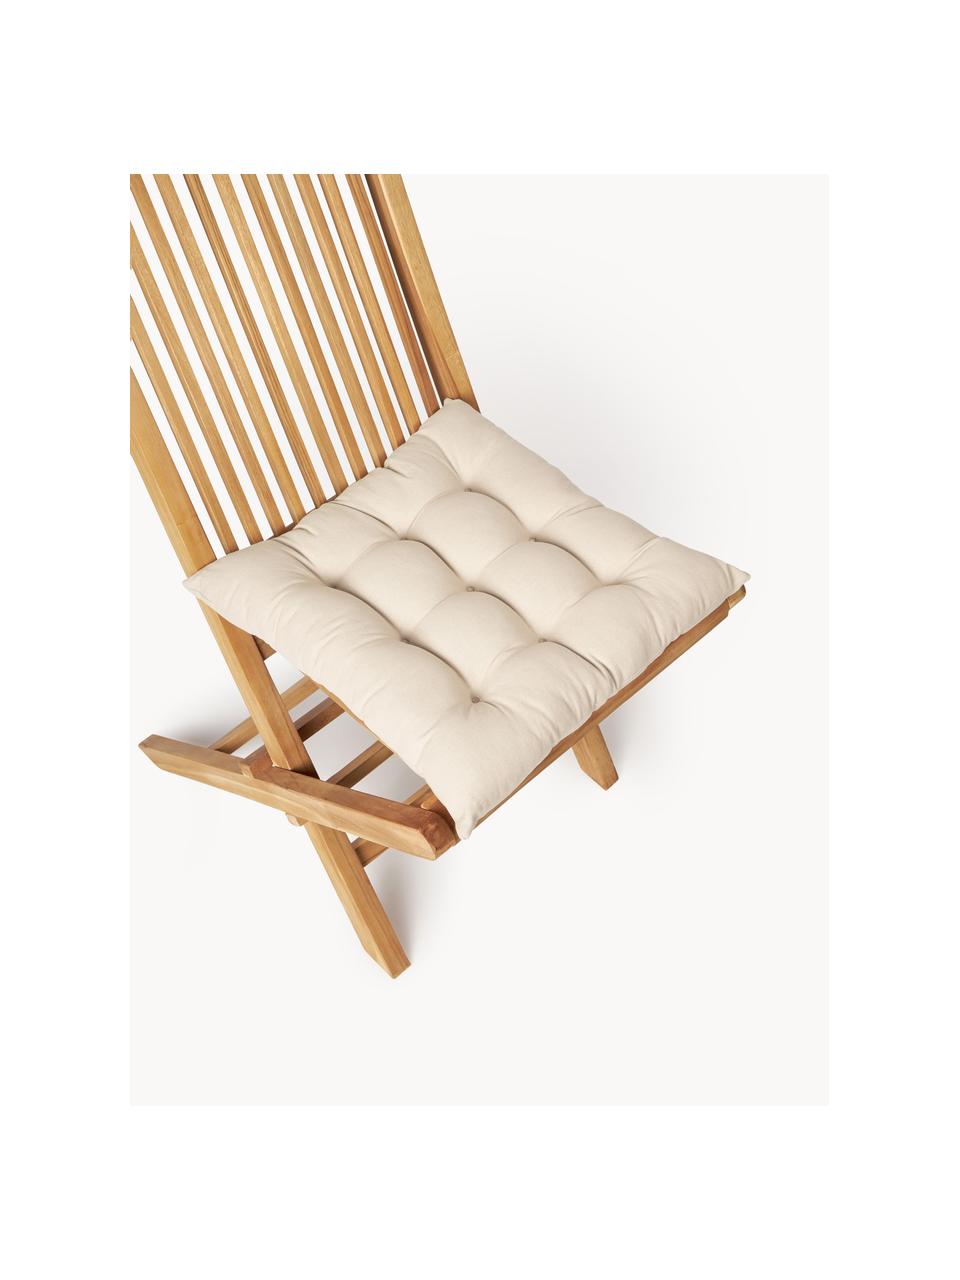 Poduszka na krzesło Ava, 2 szt., Tapicerka: 100% bawełna, Jasny beżowy, S 40 x D 40 cm